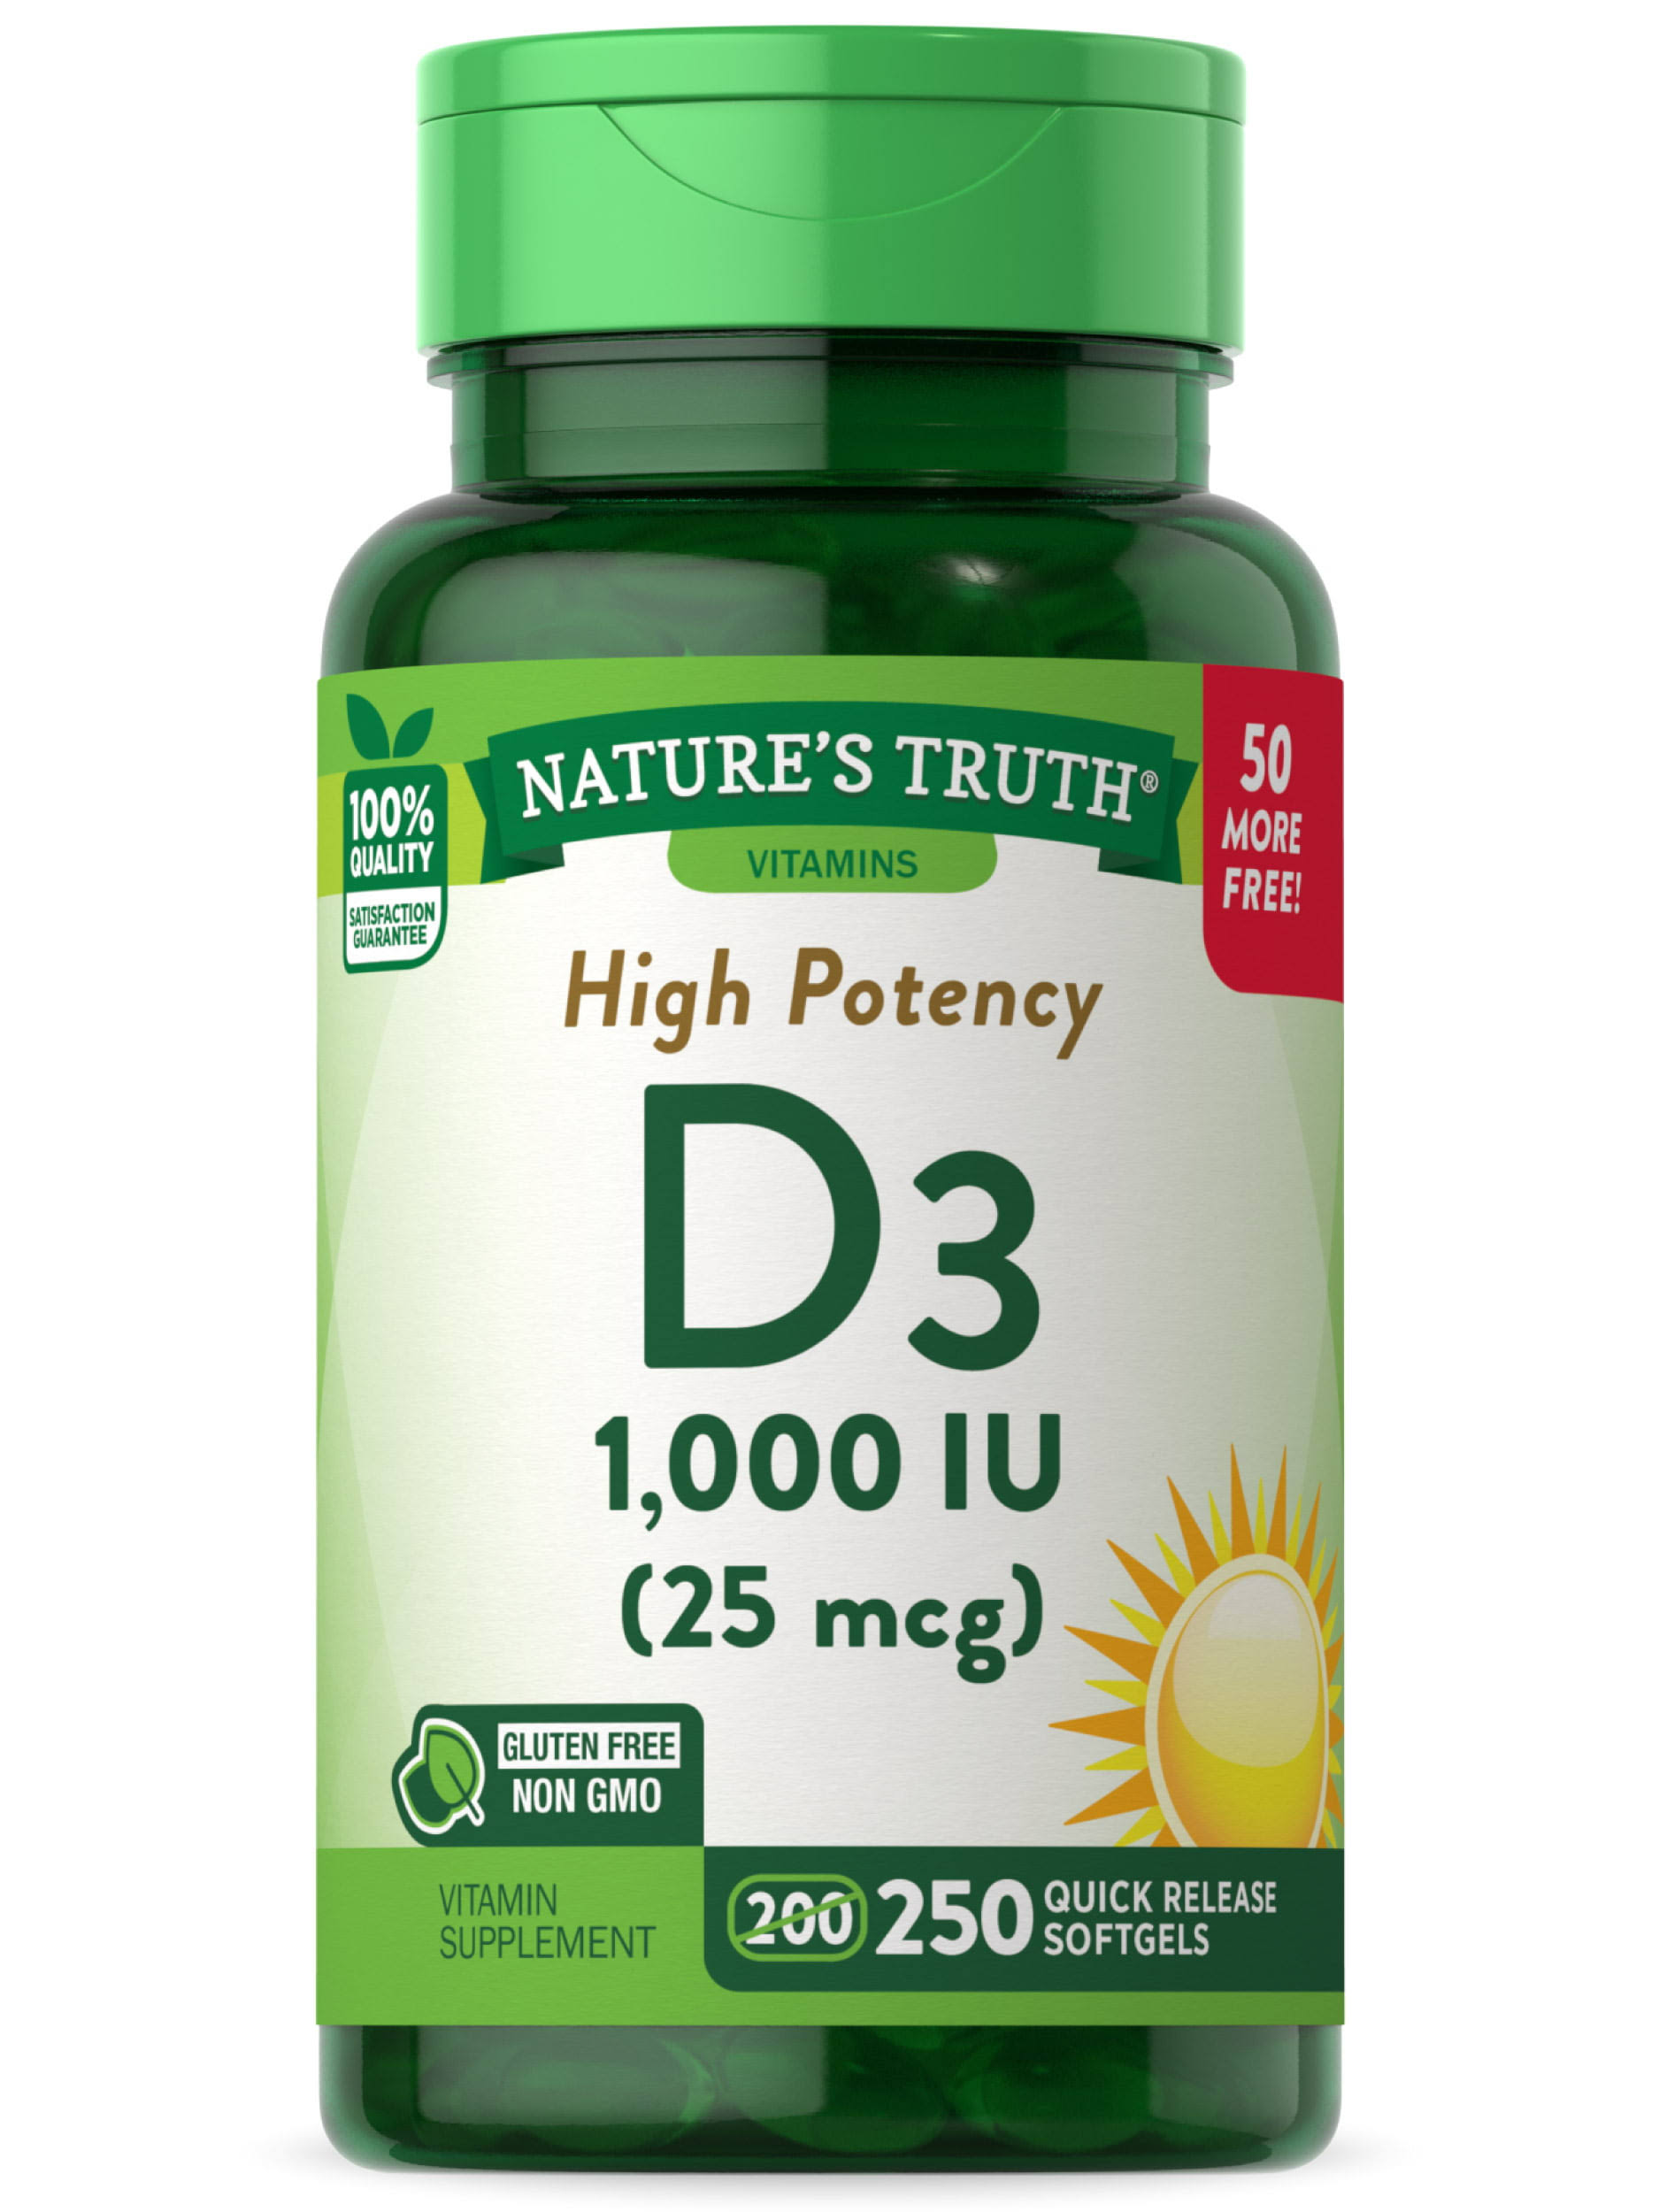 Natures Truth Vitamin D3, High Potency, 1000 IU, Quick Release Softgels - 250 softgels